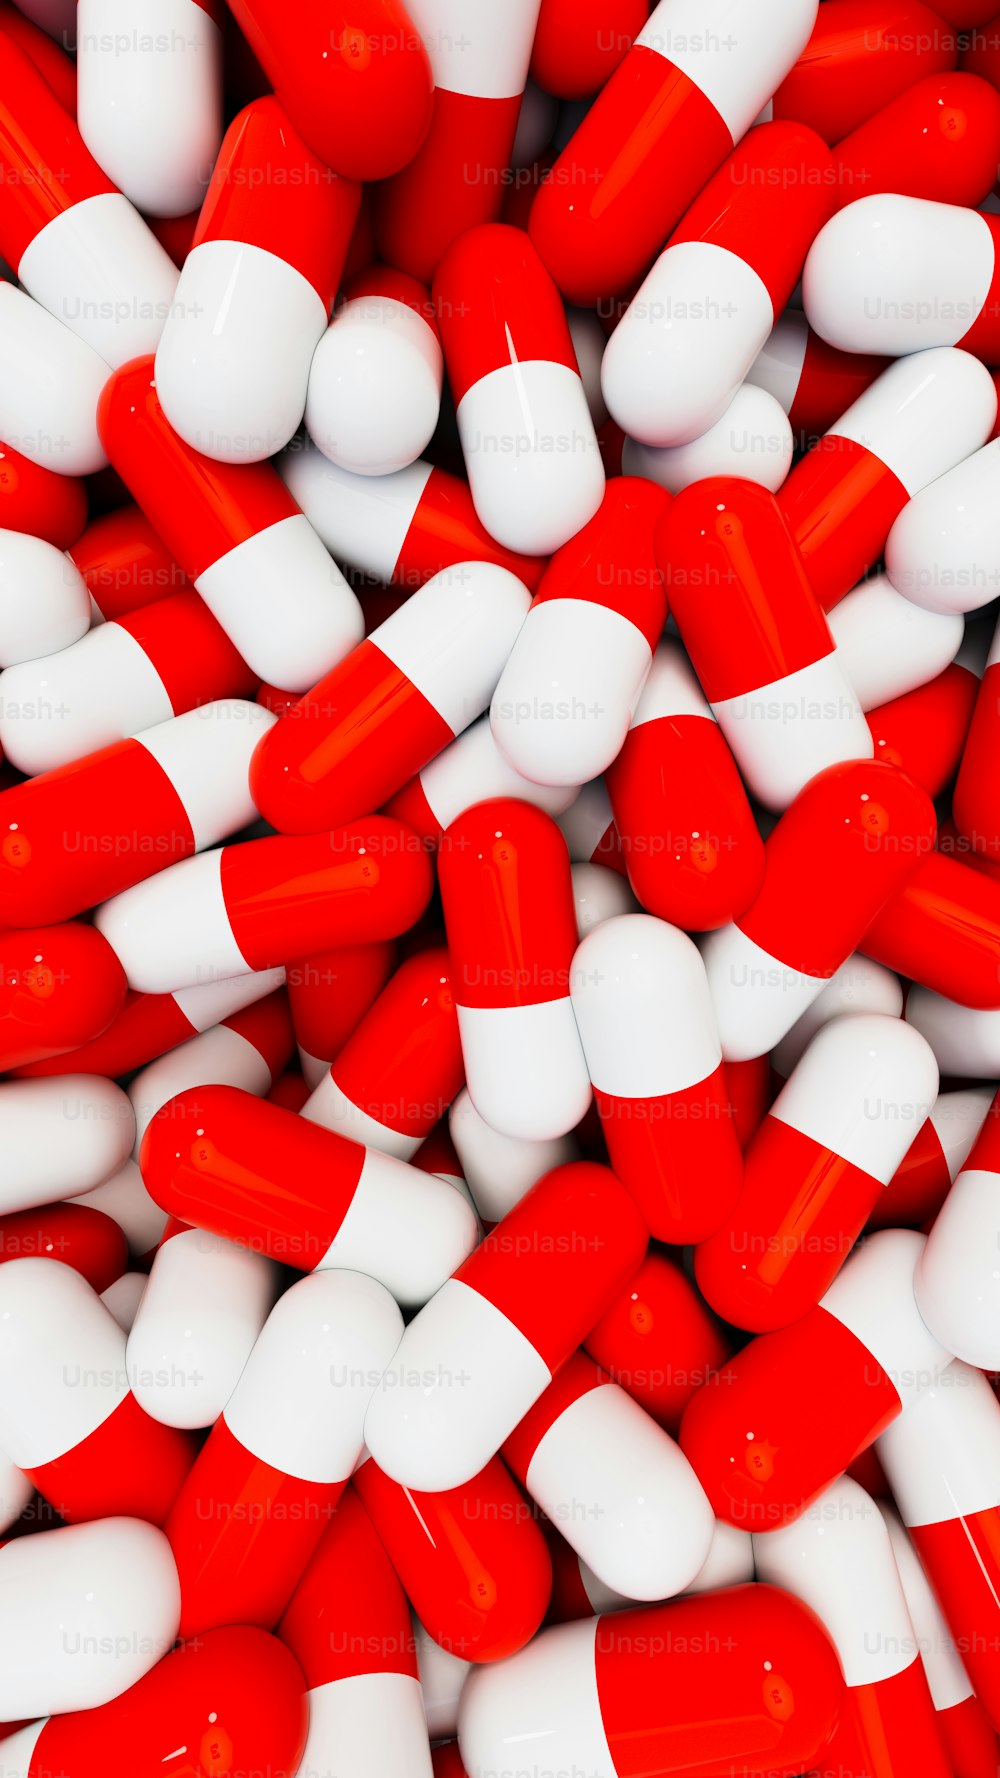 Ein Haufen roter und weißer Pillen